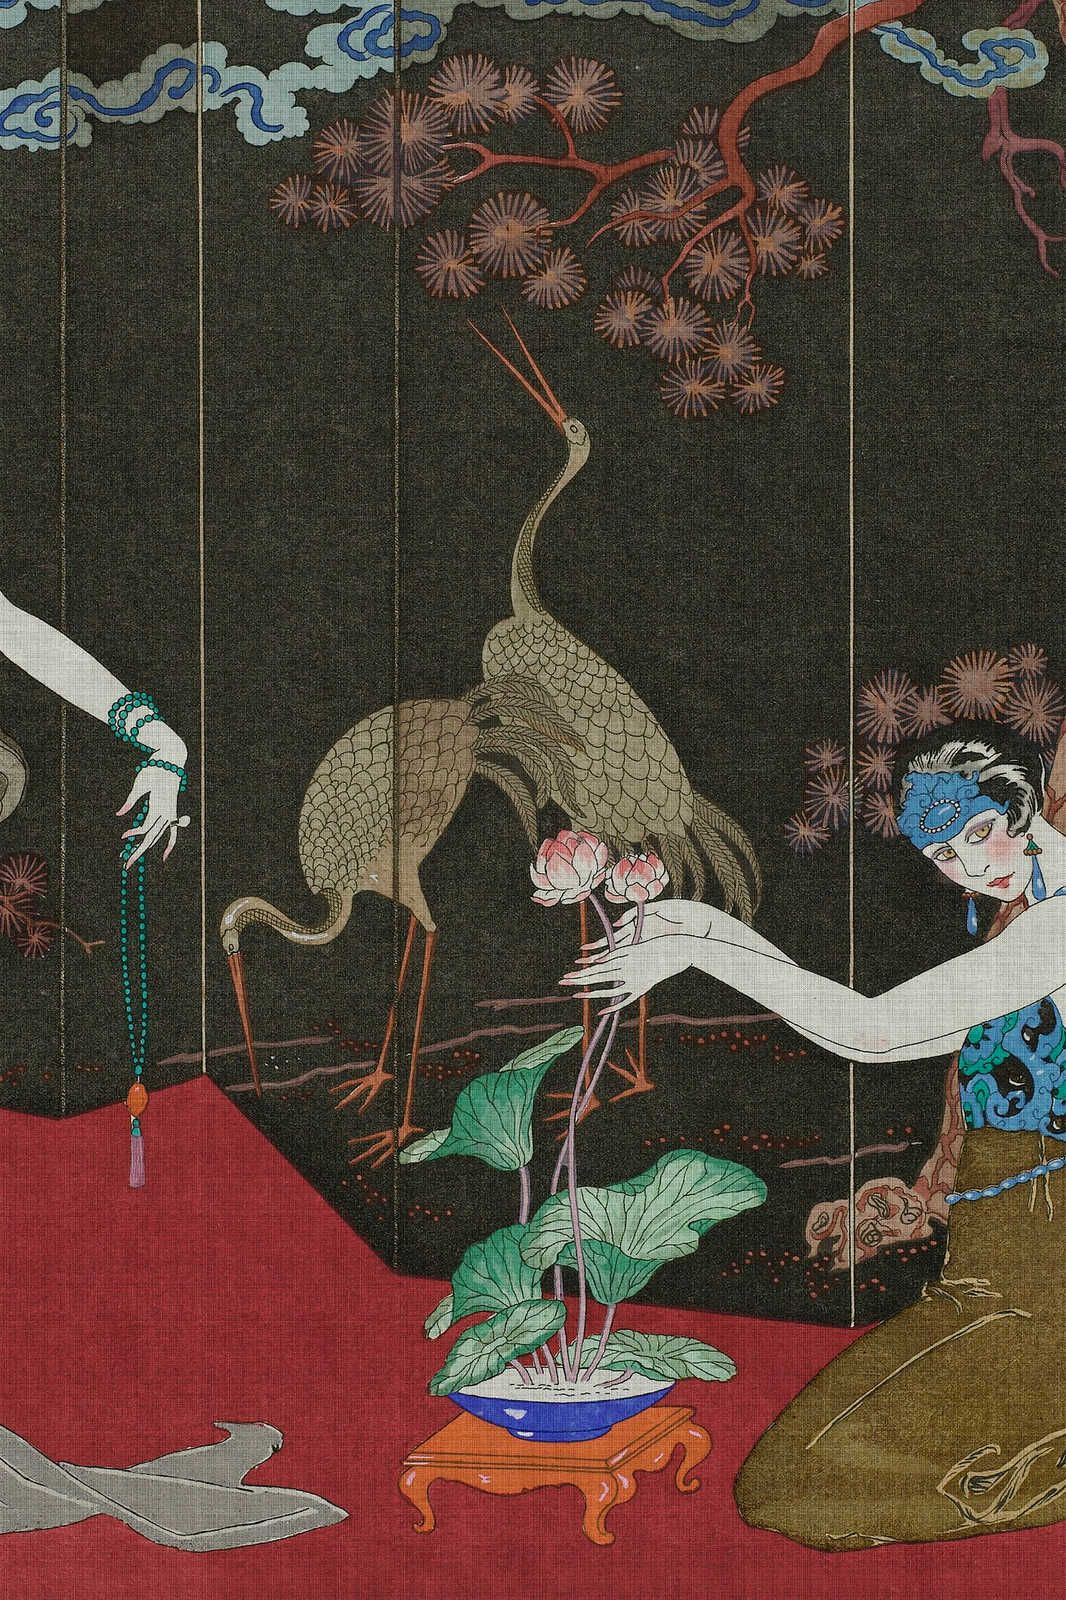             Babylon 1 - Canvas schilderij kunstprint Klassiek Aziatisch geïnspireerd - 0,90 m x 0,60 m
        